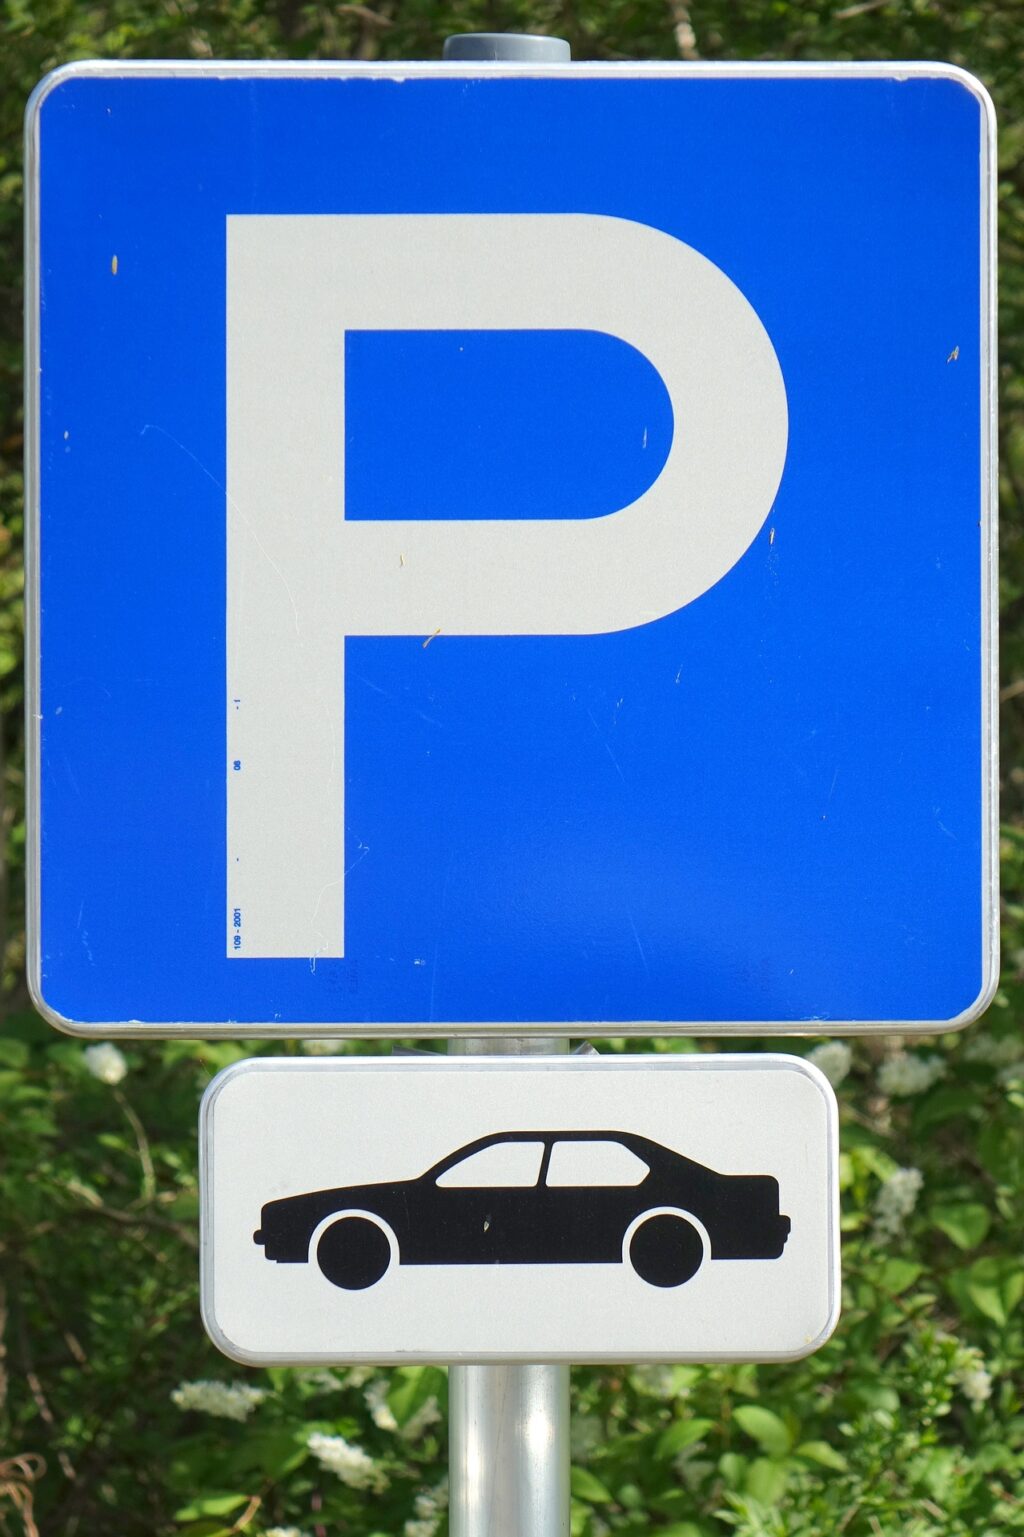 Strefa płatnego parkowania ma powstać w tym roku. Trwają ustalenia komisji